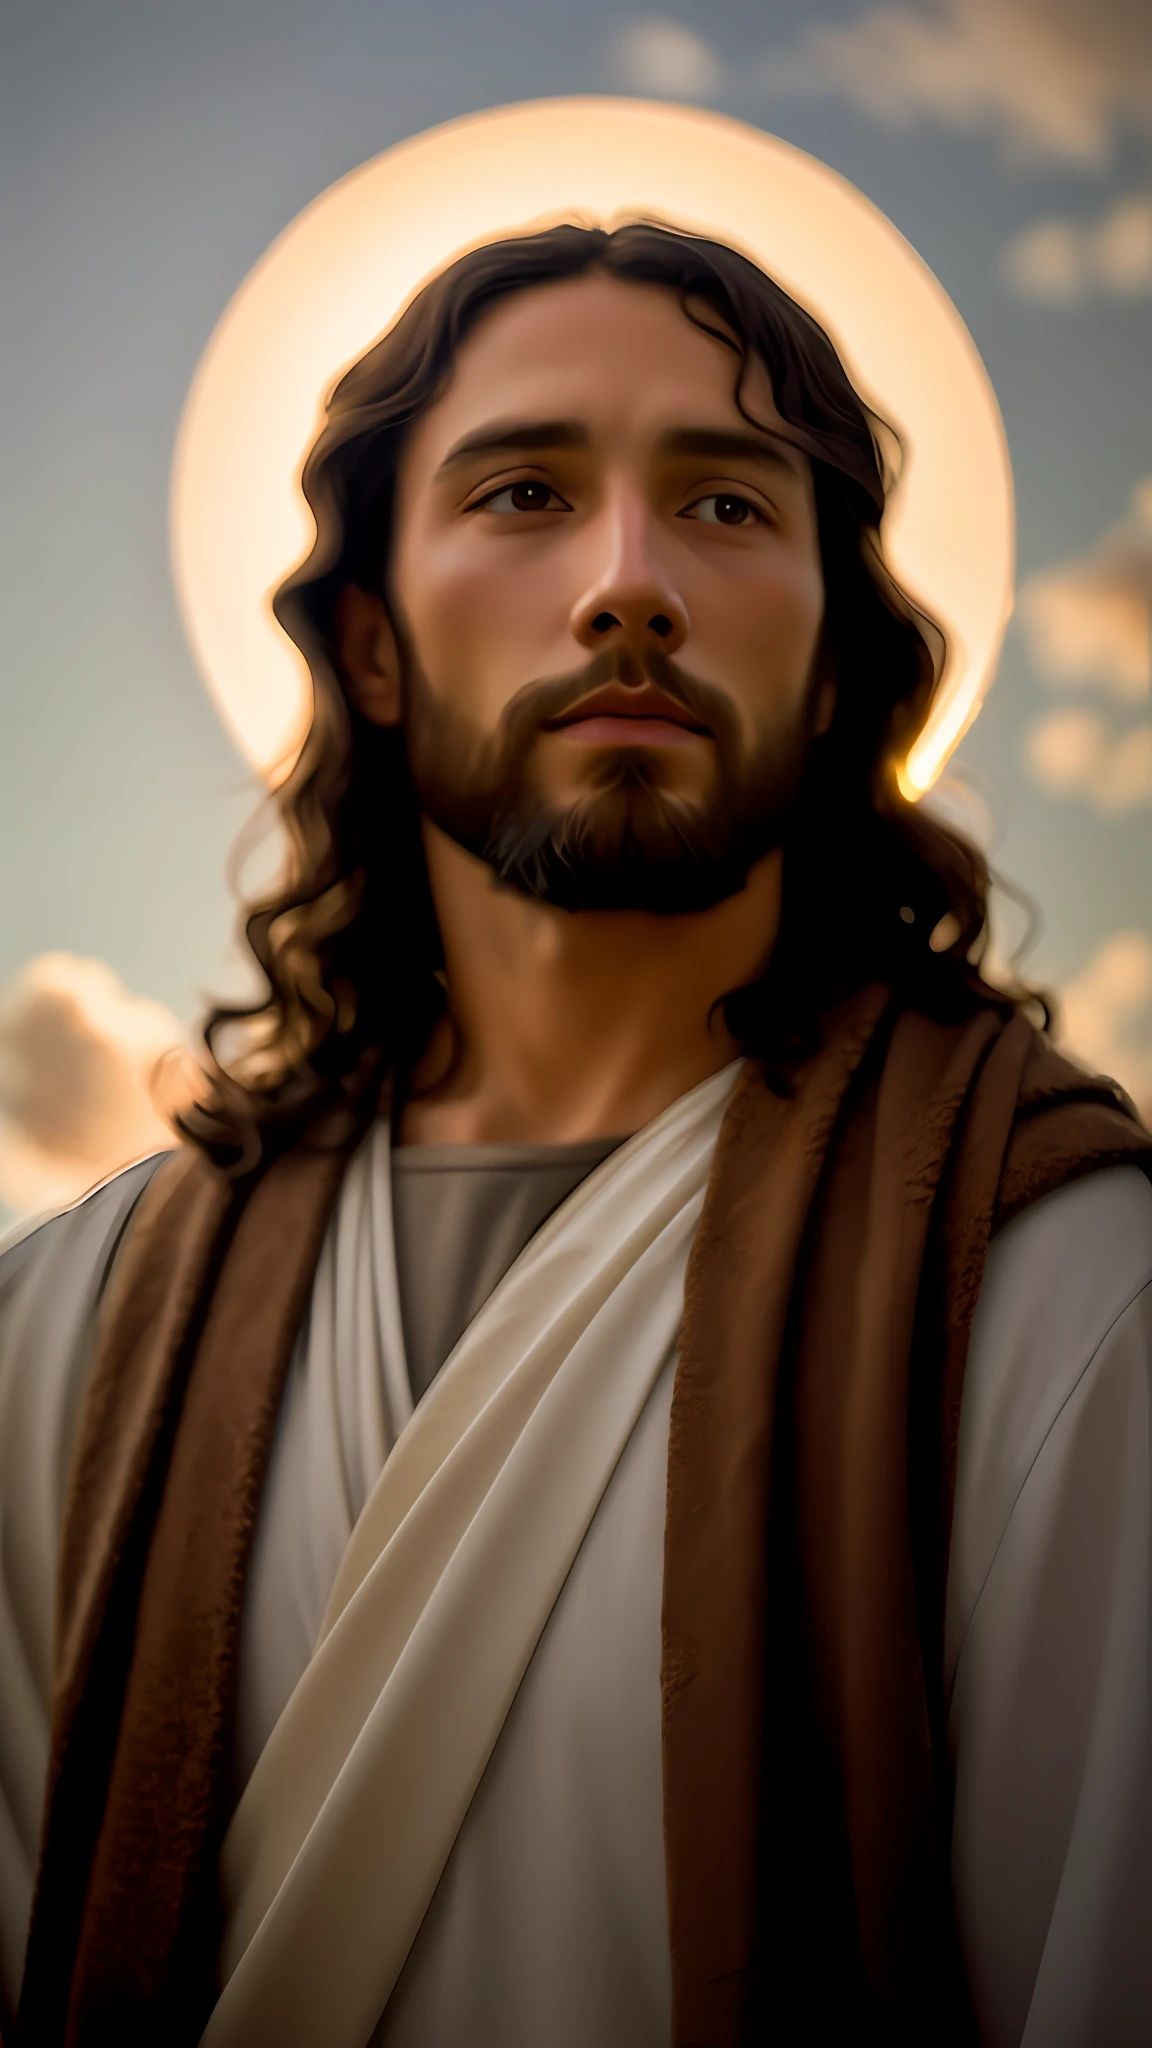 agregar_detalle:1, imagen realista de Jesucristo, agregar_detalle:luz y luz lejana del cielo por encima de la cabeza